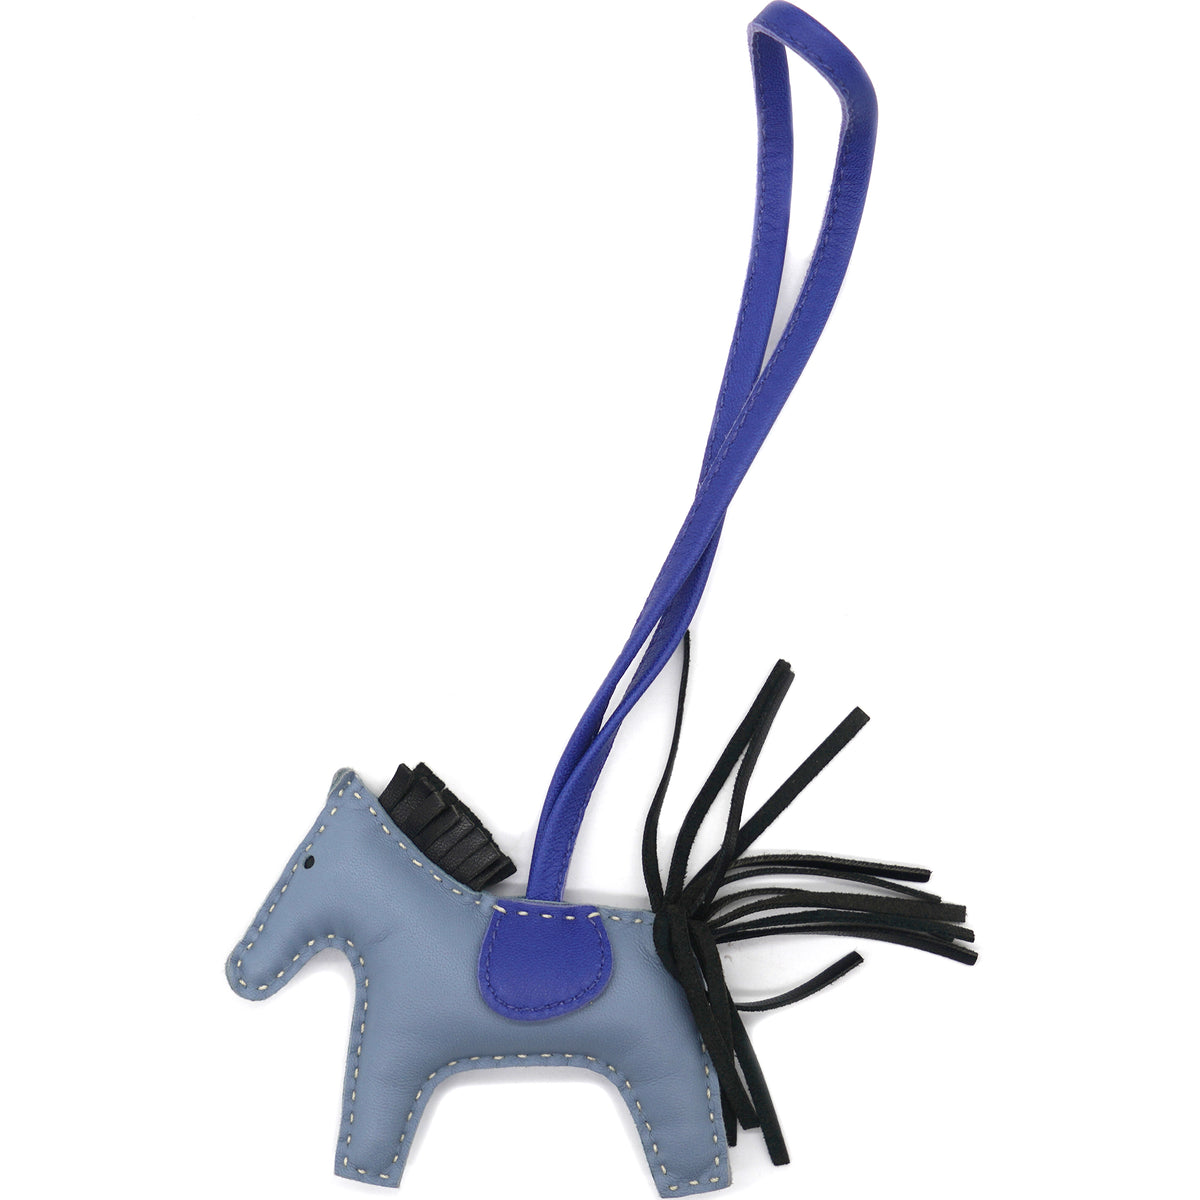 Hermes Bag Charm Milo Rodeo Horse Lambskin GM Bleu Azteque/Bleu